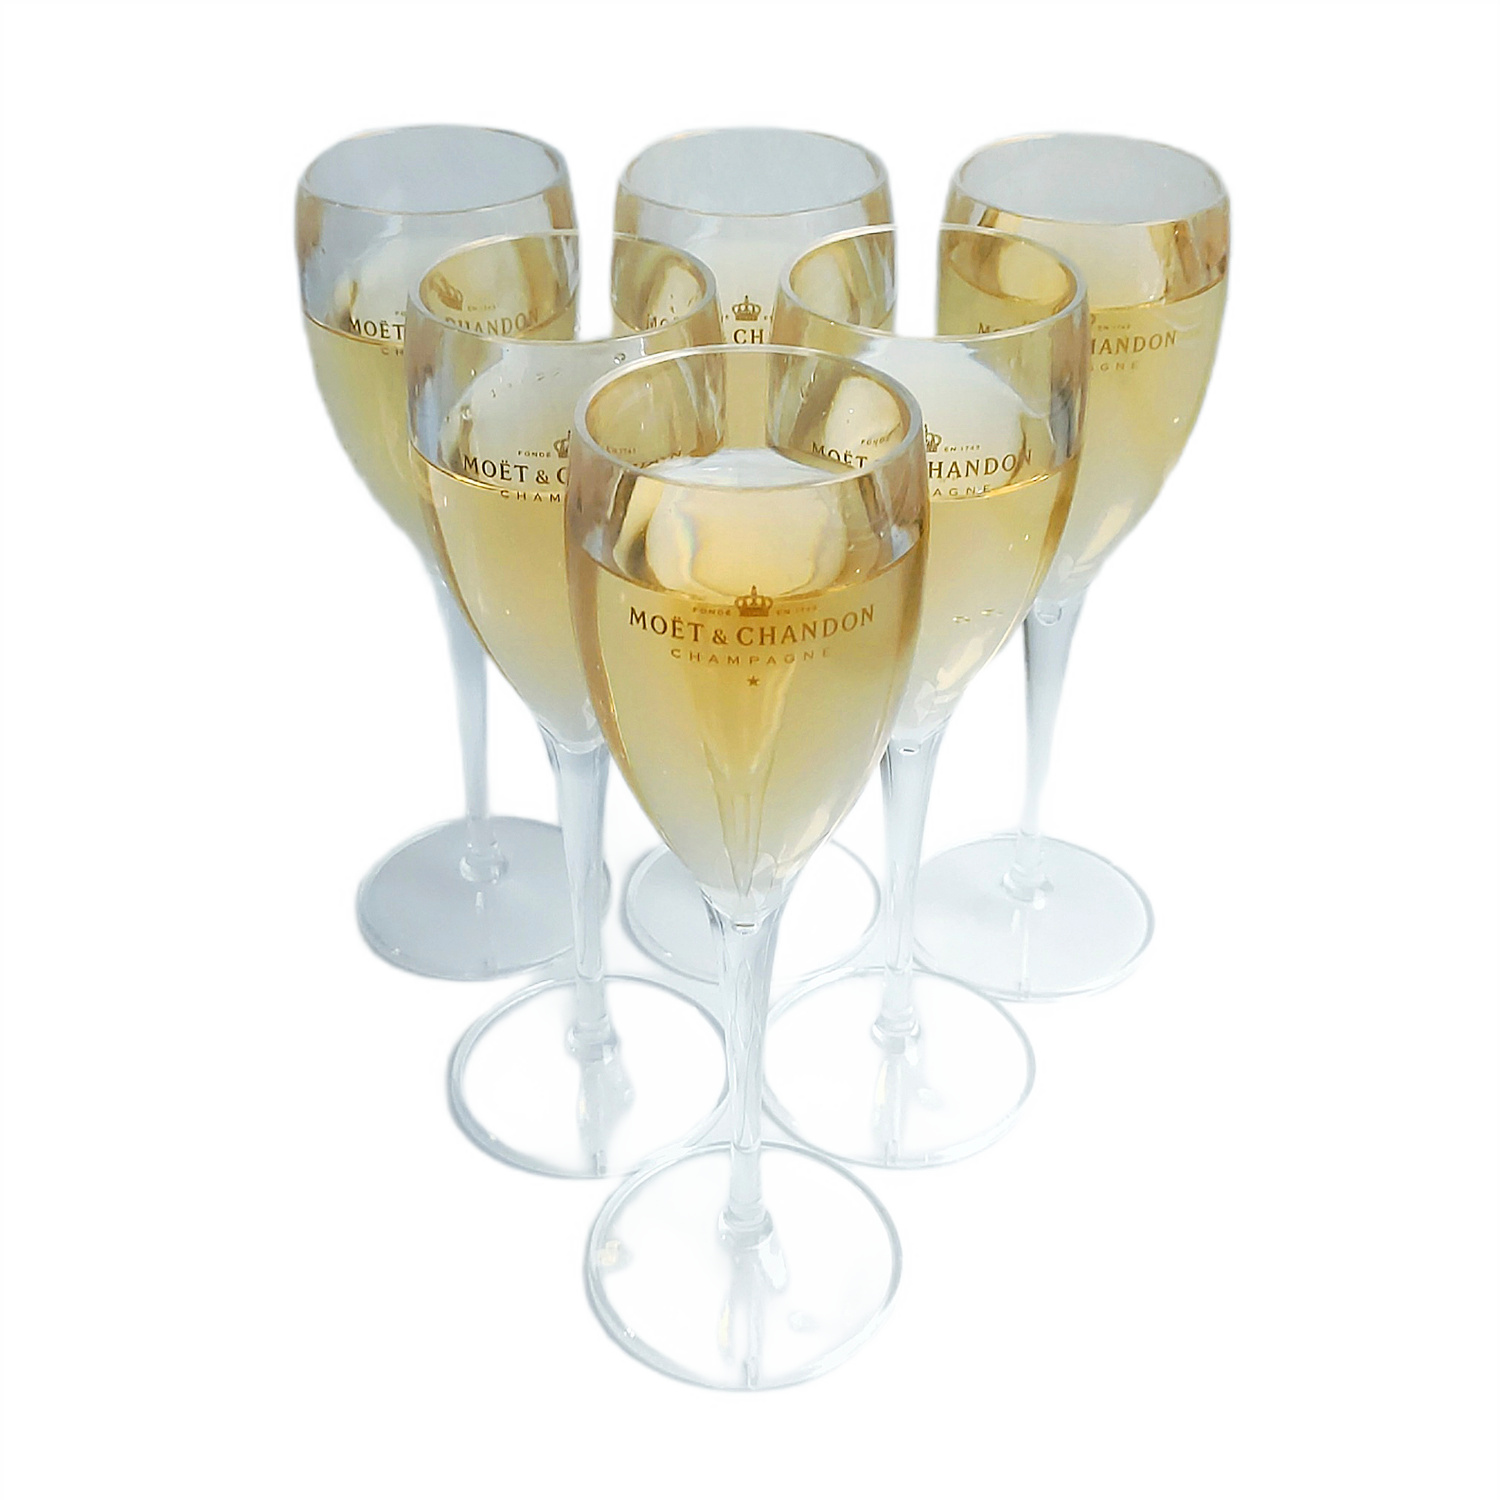 Комплект из шести бокалов предназначен для праздничного употребления шампанского и вина.